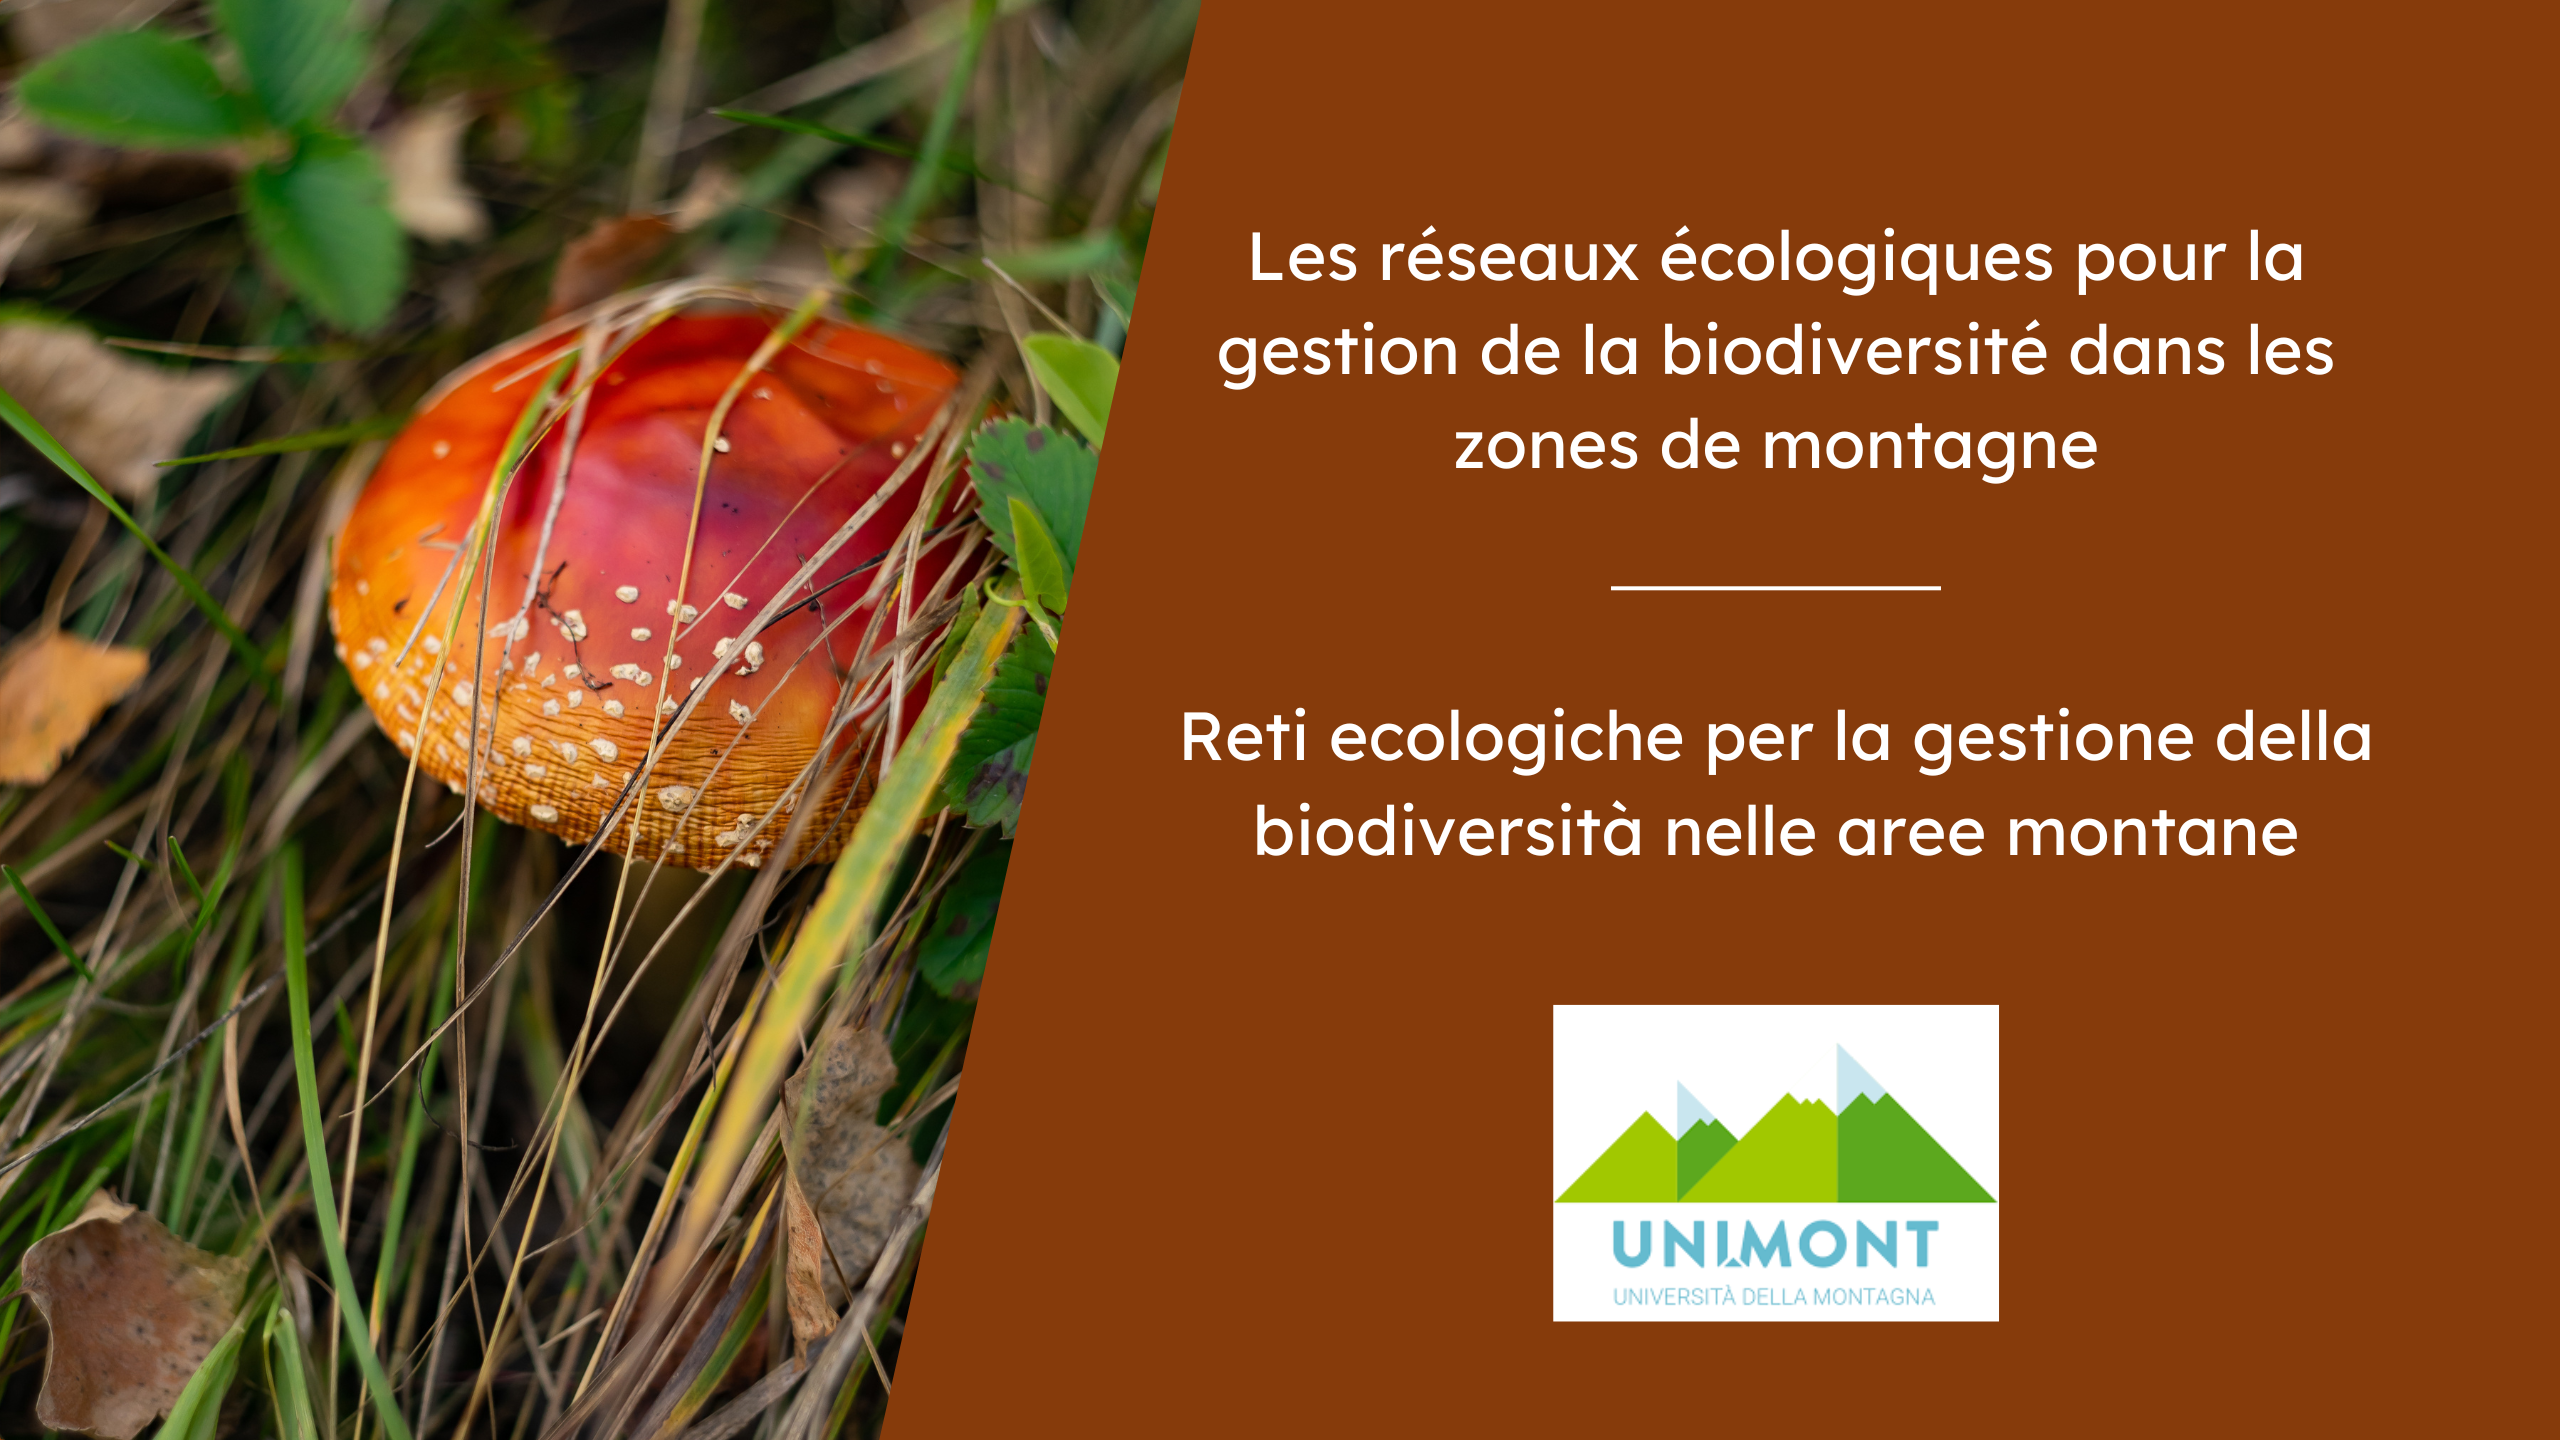 Reti ecologiche per la gestione della biodiversità nelle aree montane